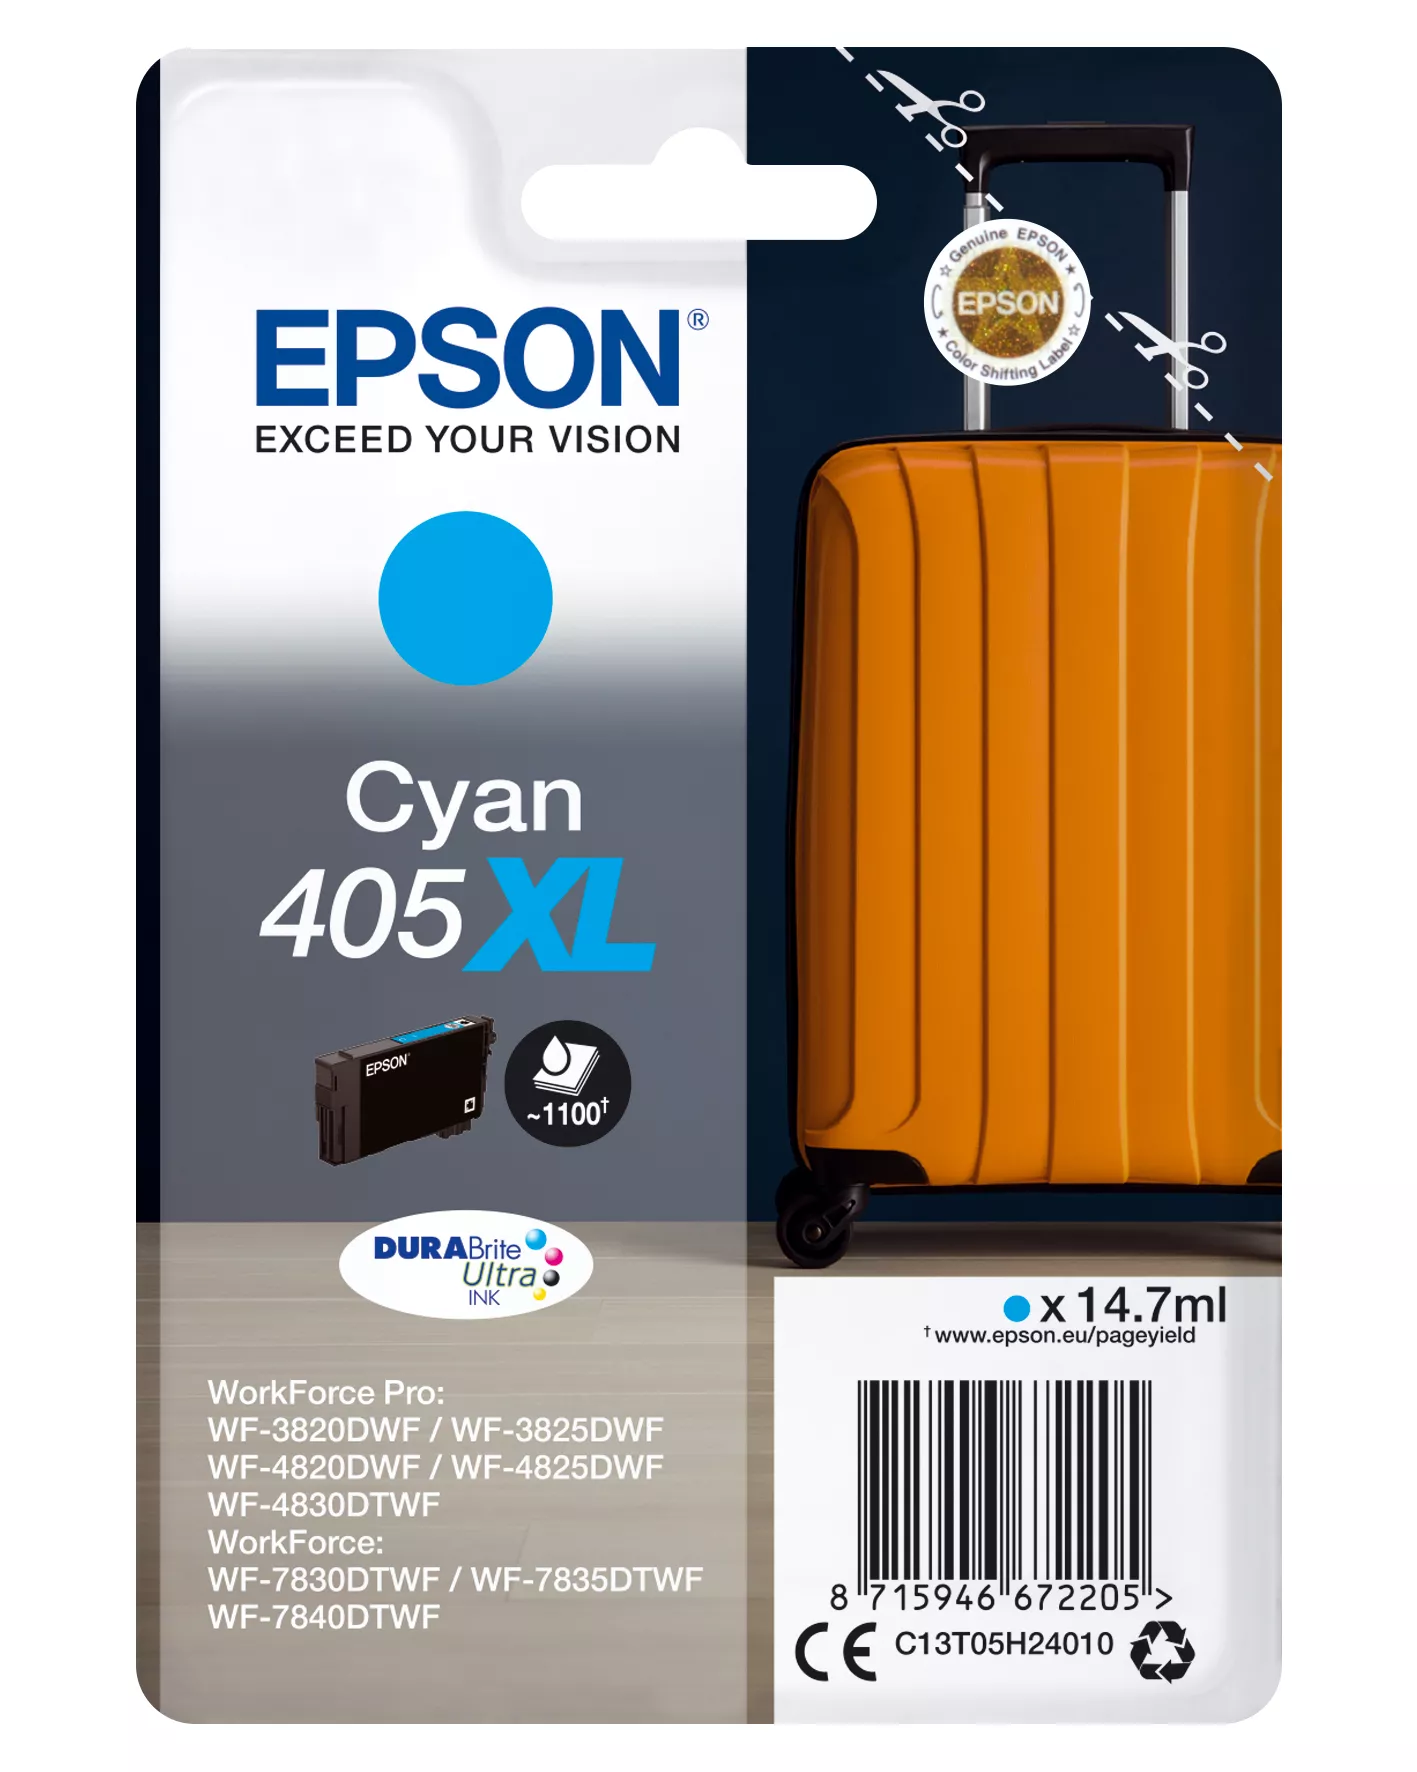 Achat Epson Singlepack Cyan 405XL DURABrite Ultra Ink et autres produits de la marque Epson